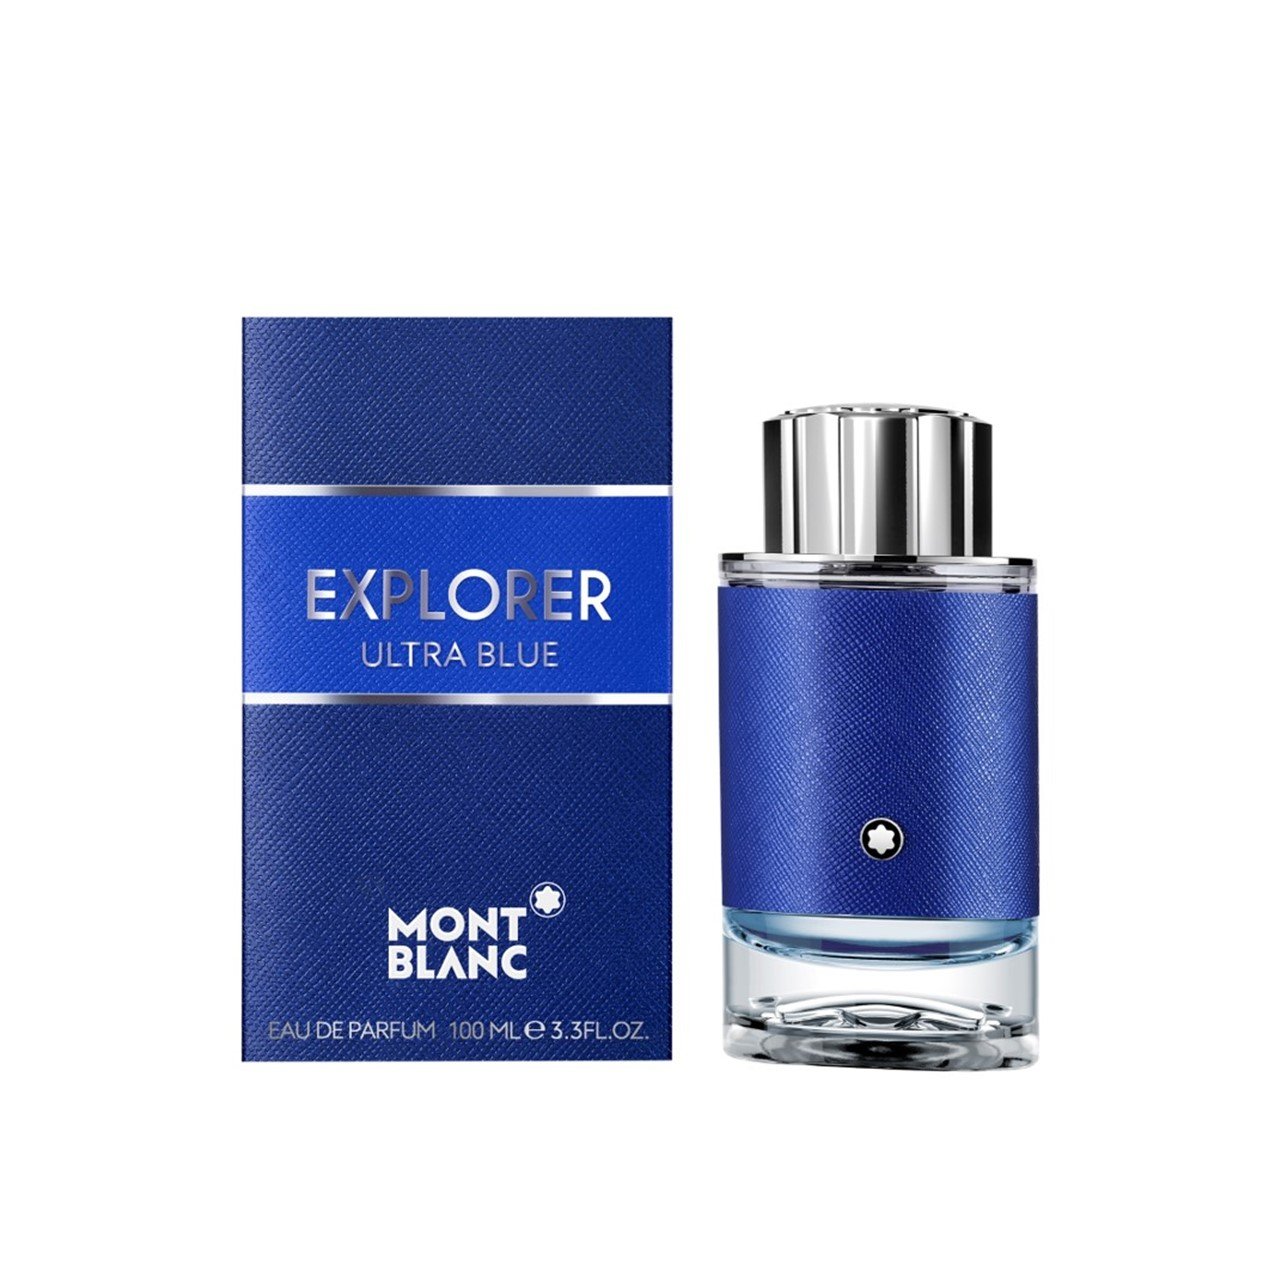 Montblanc Explorer Ultra Blue Eau de Parfum 100ml (3.4fl oz)